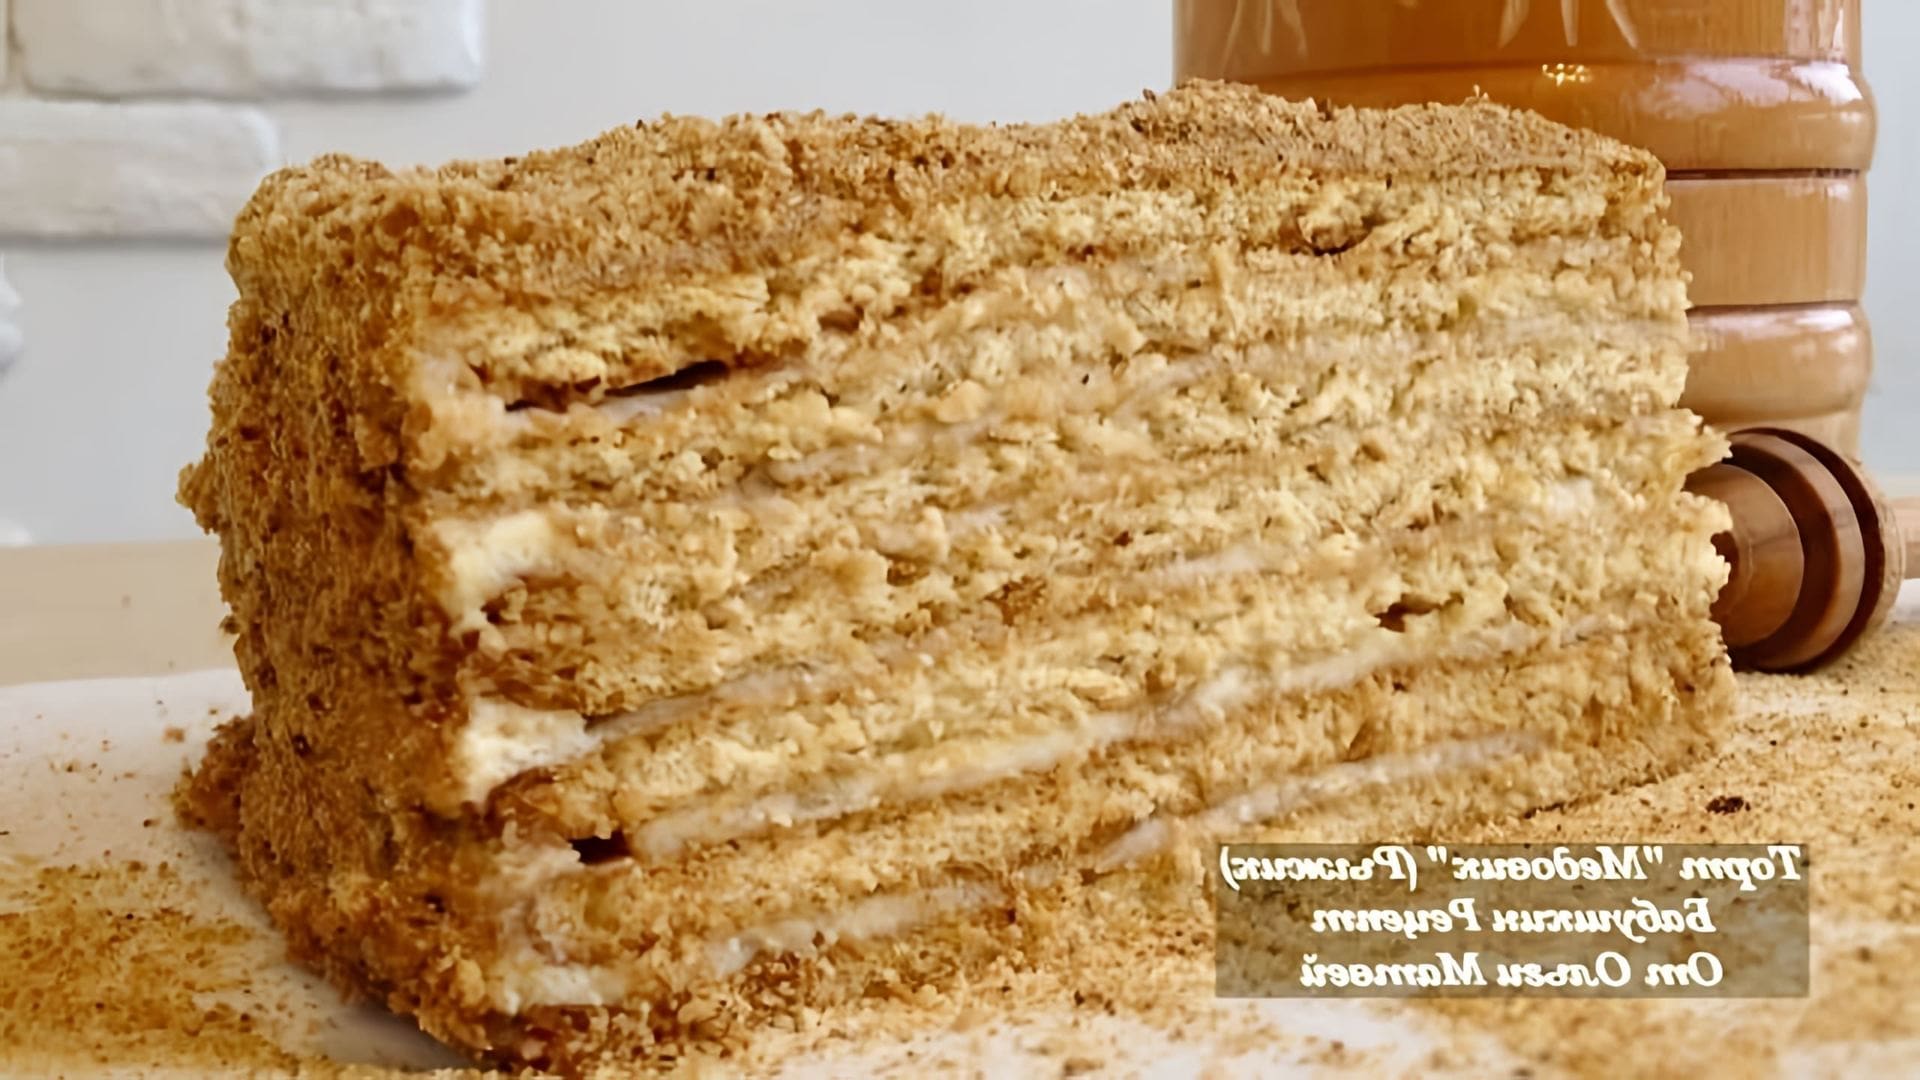 Видео рецепт традиционного русского медового торта под названием "медовик" или "рыжик"